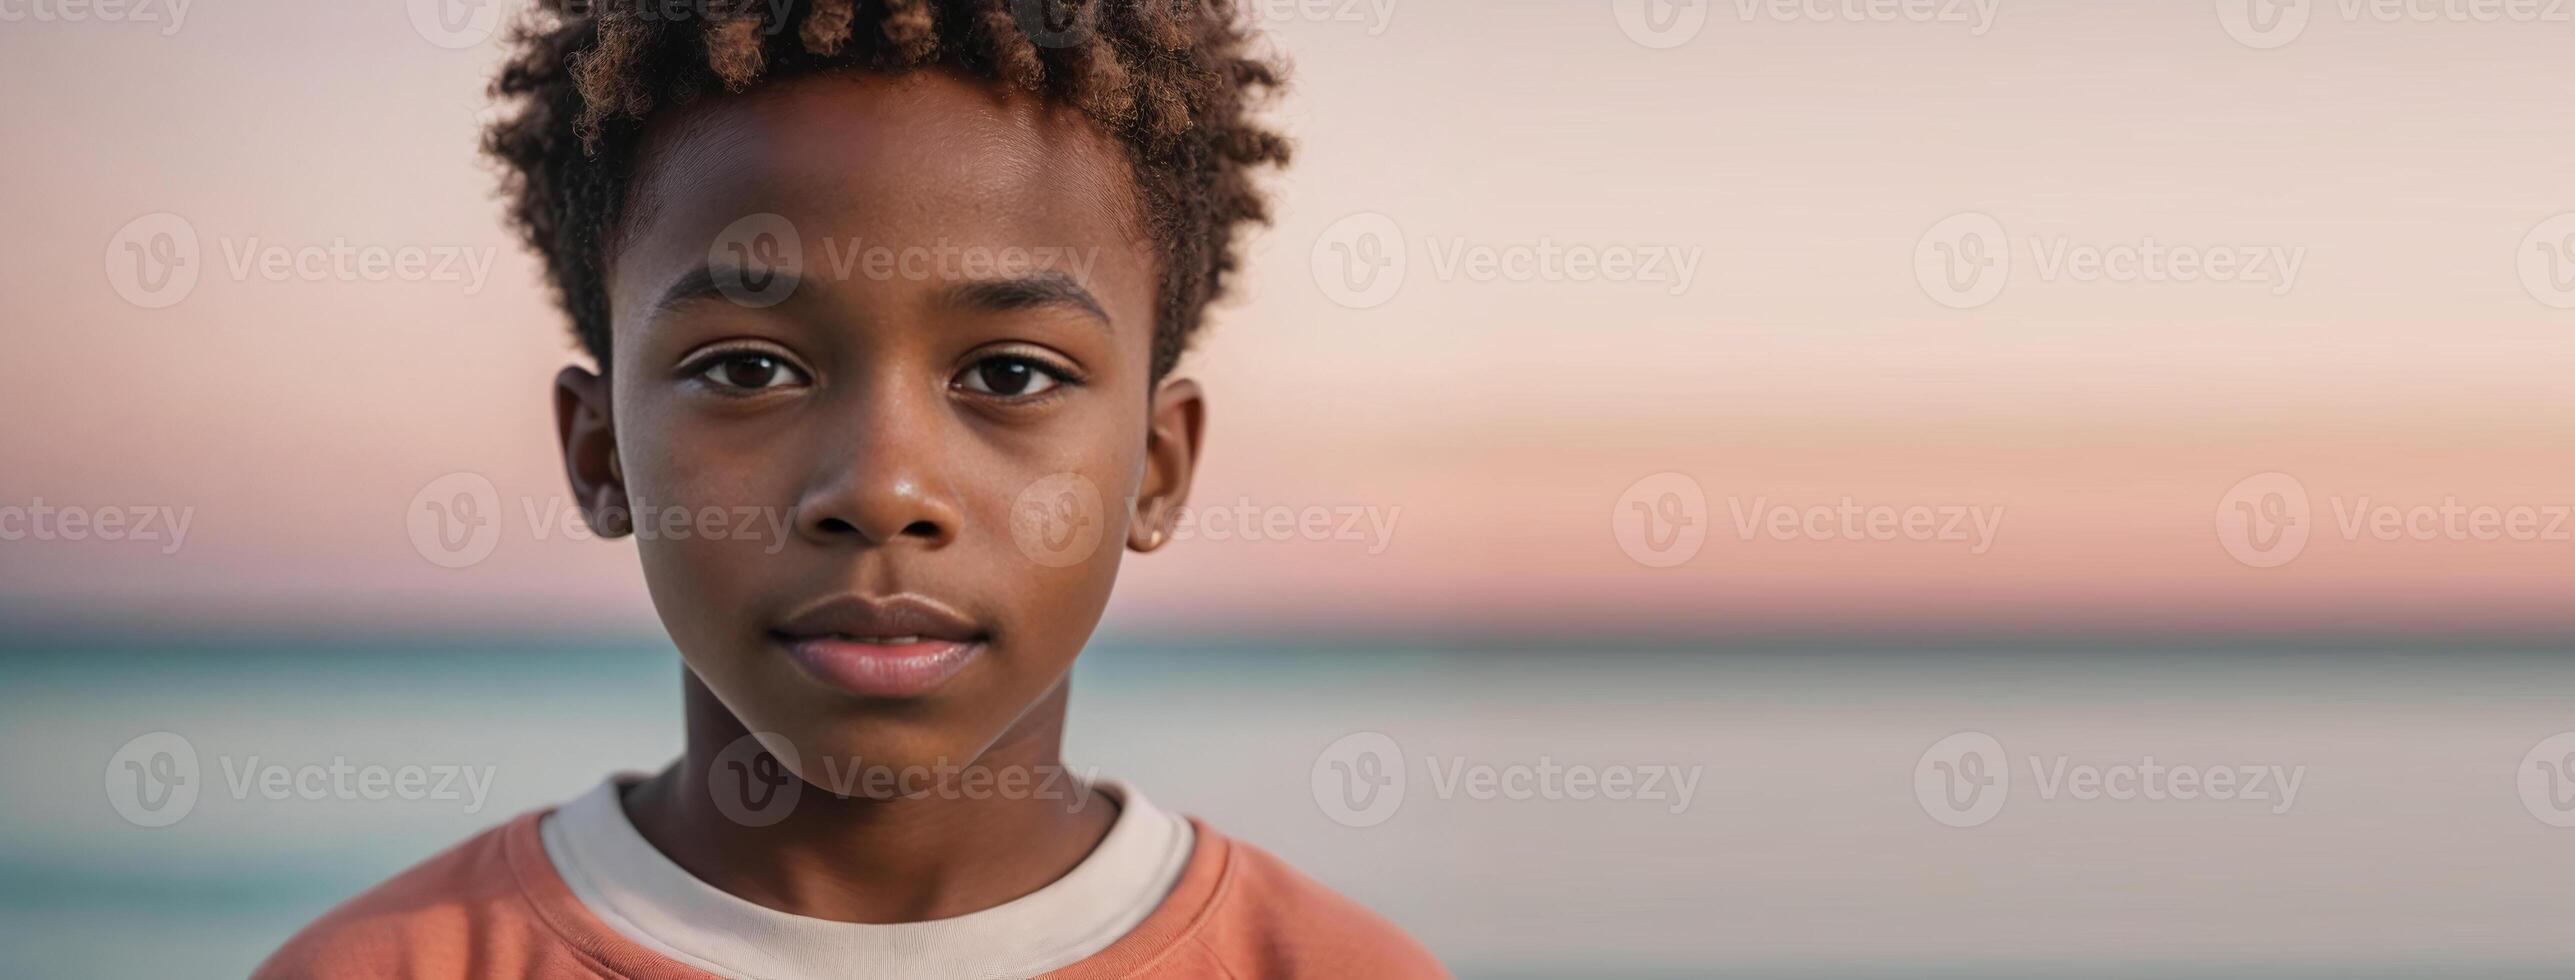 ett afrikansk amerikan ungdomlig pojke isolerat på en korall bakgrund med kopia Plats. foto